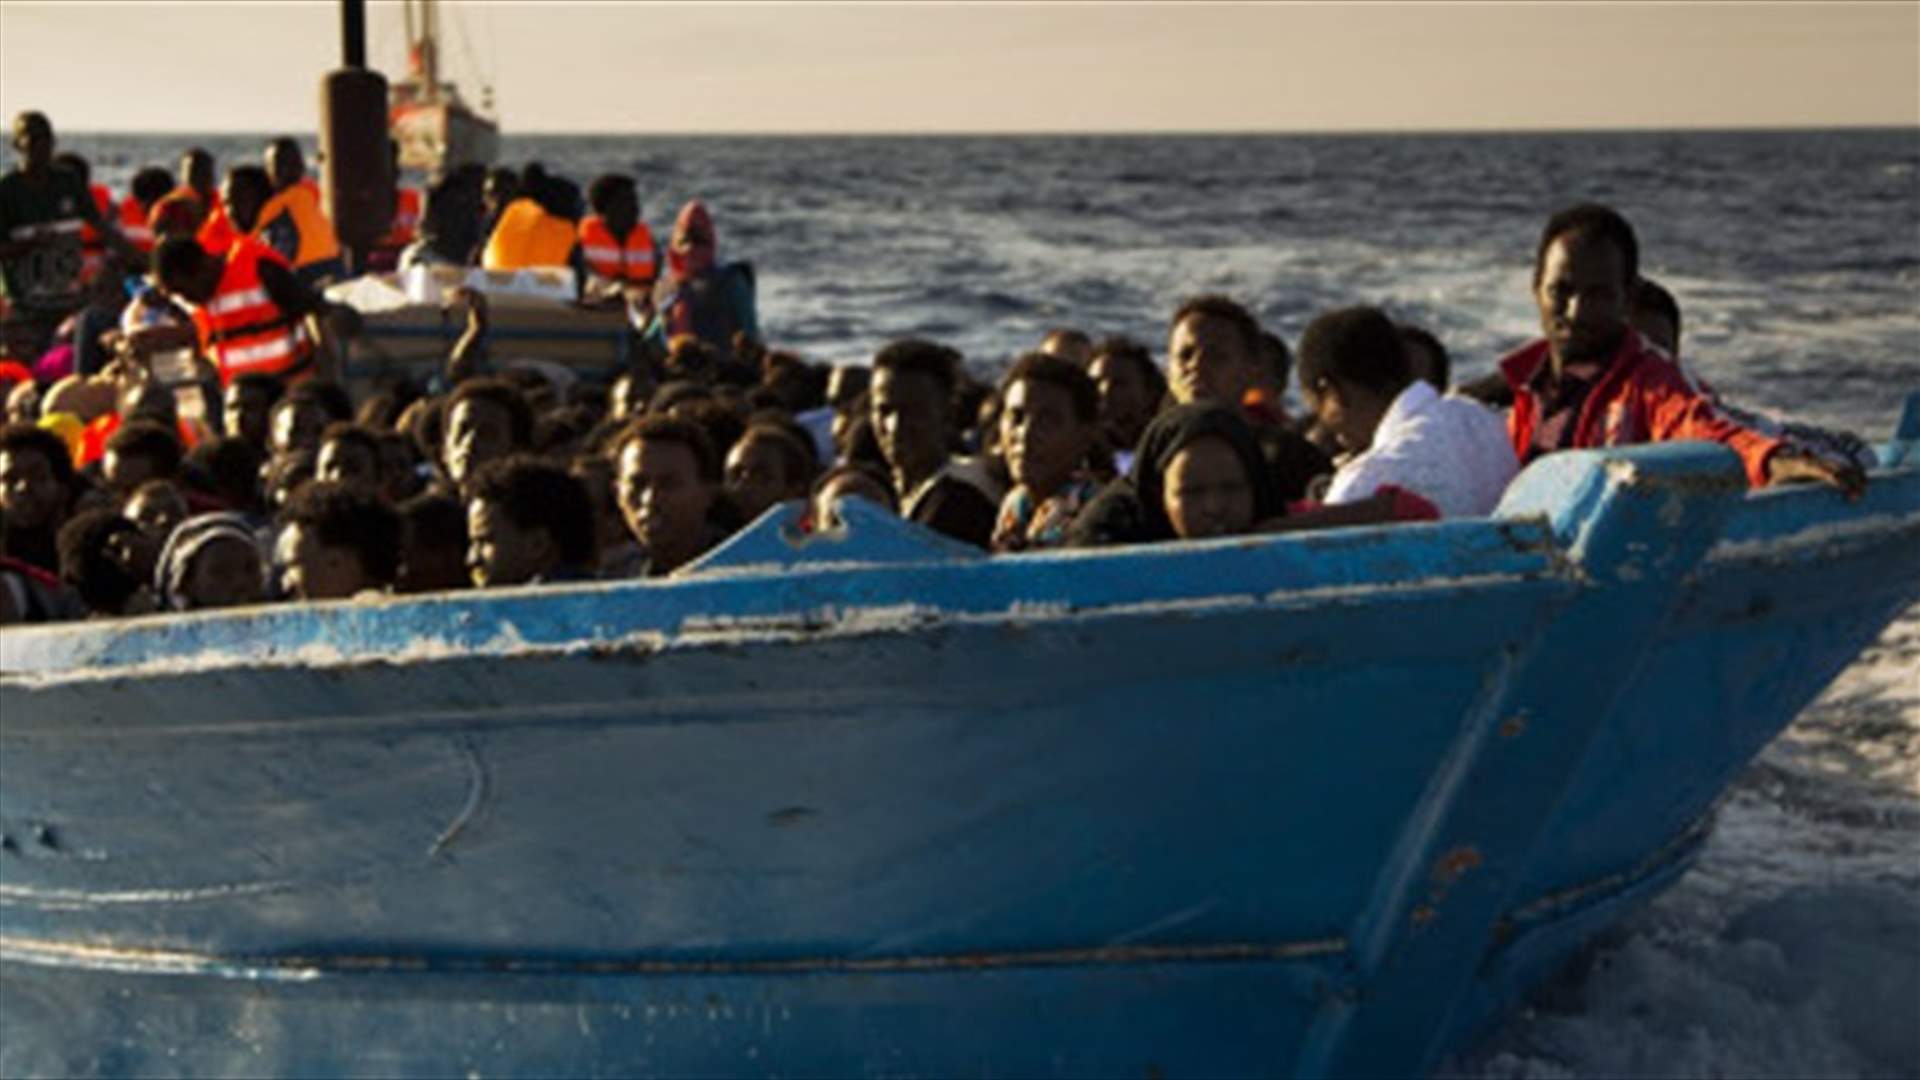 توقيف 4 أشخاص يشتبه بأنهم مهربون بعد غرق مركب المهاجرين قبالة سواحل مصر